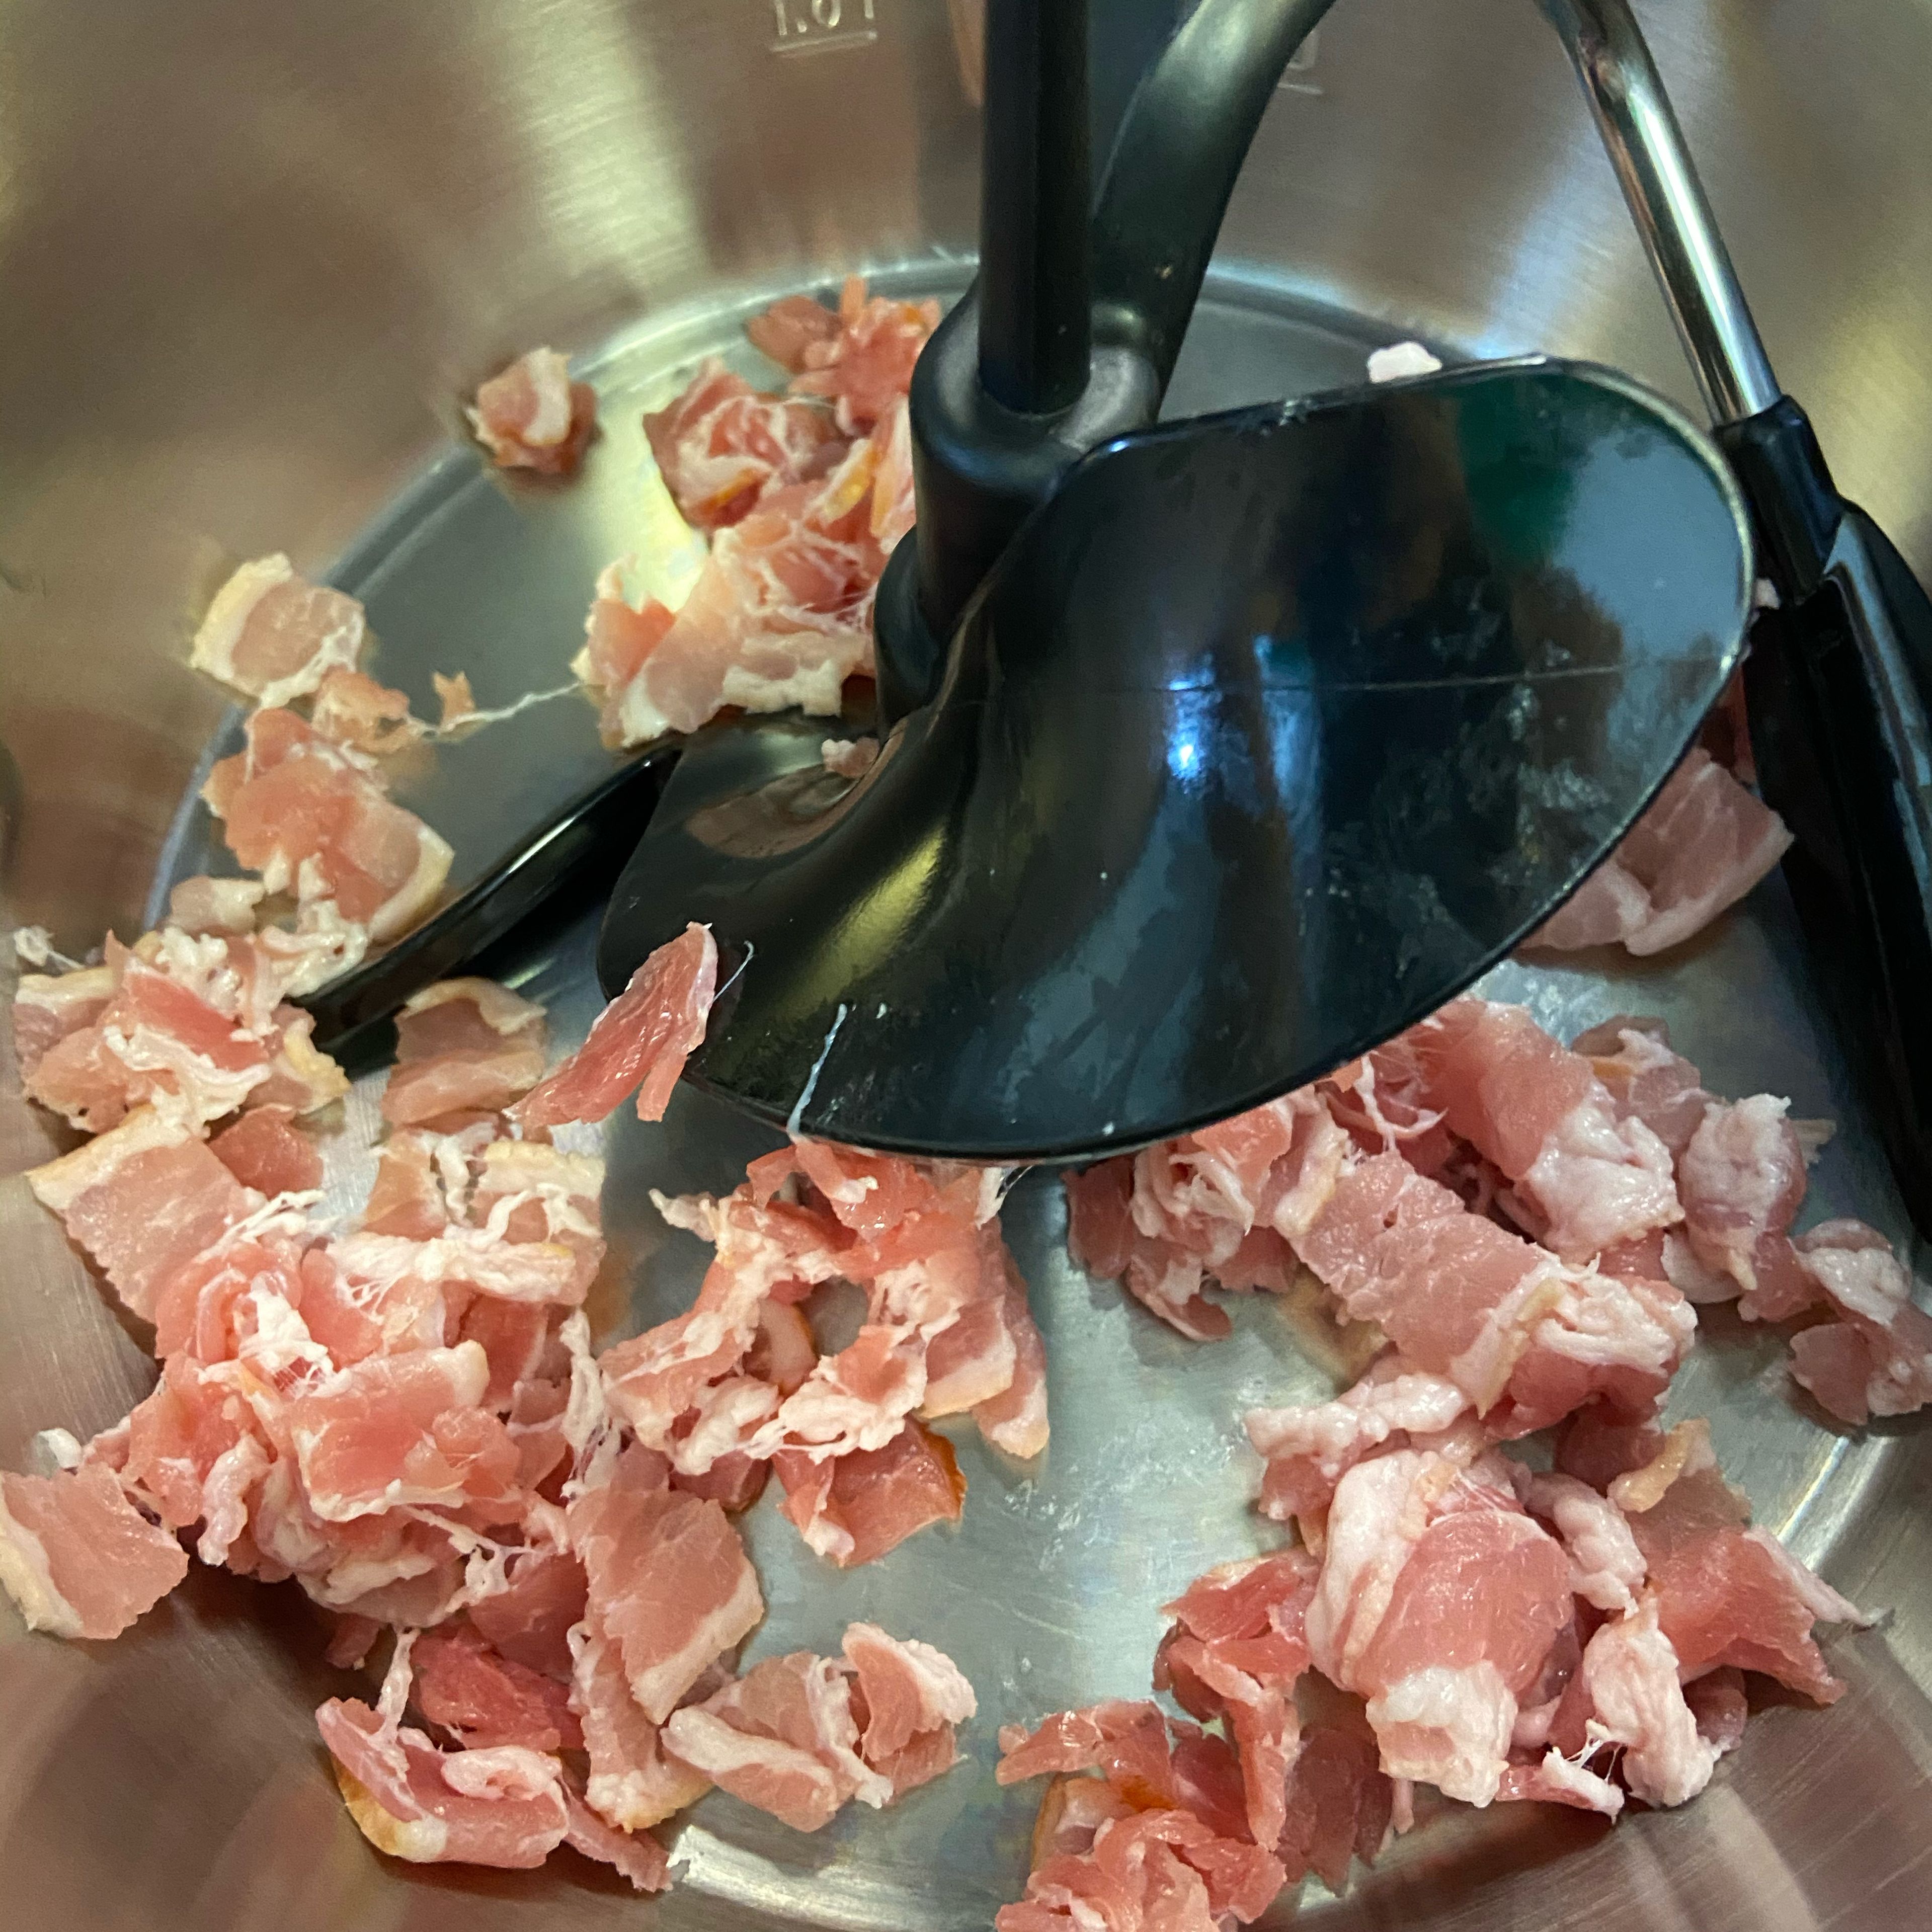 Die Bacon-Scheiben in dünne Streifen schneiden. Den Bacon ohne Öl in den Cookit geben und bei geschlossenem Deckel, ohne Messbecher, andünsten (3D-Rührer I Stufe 4 I 120°C I 4 Min.). Außerdem einen Topf mit reichlich Wasser zum Kochen bringen. Das Wasser salzen.